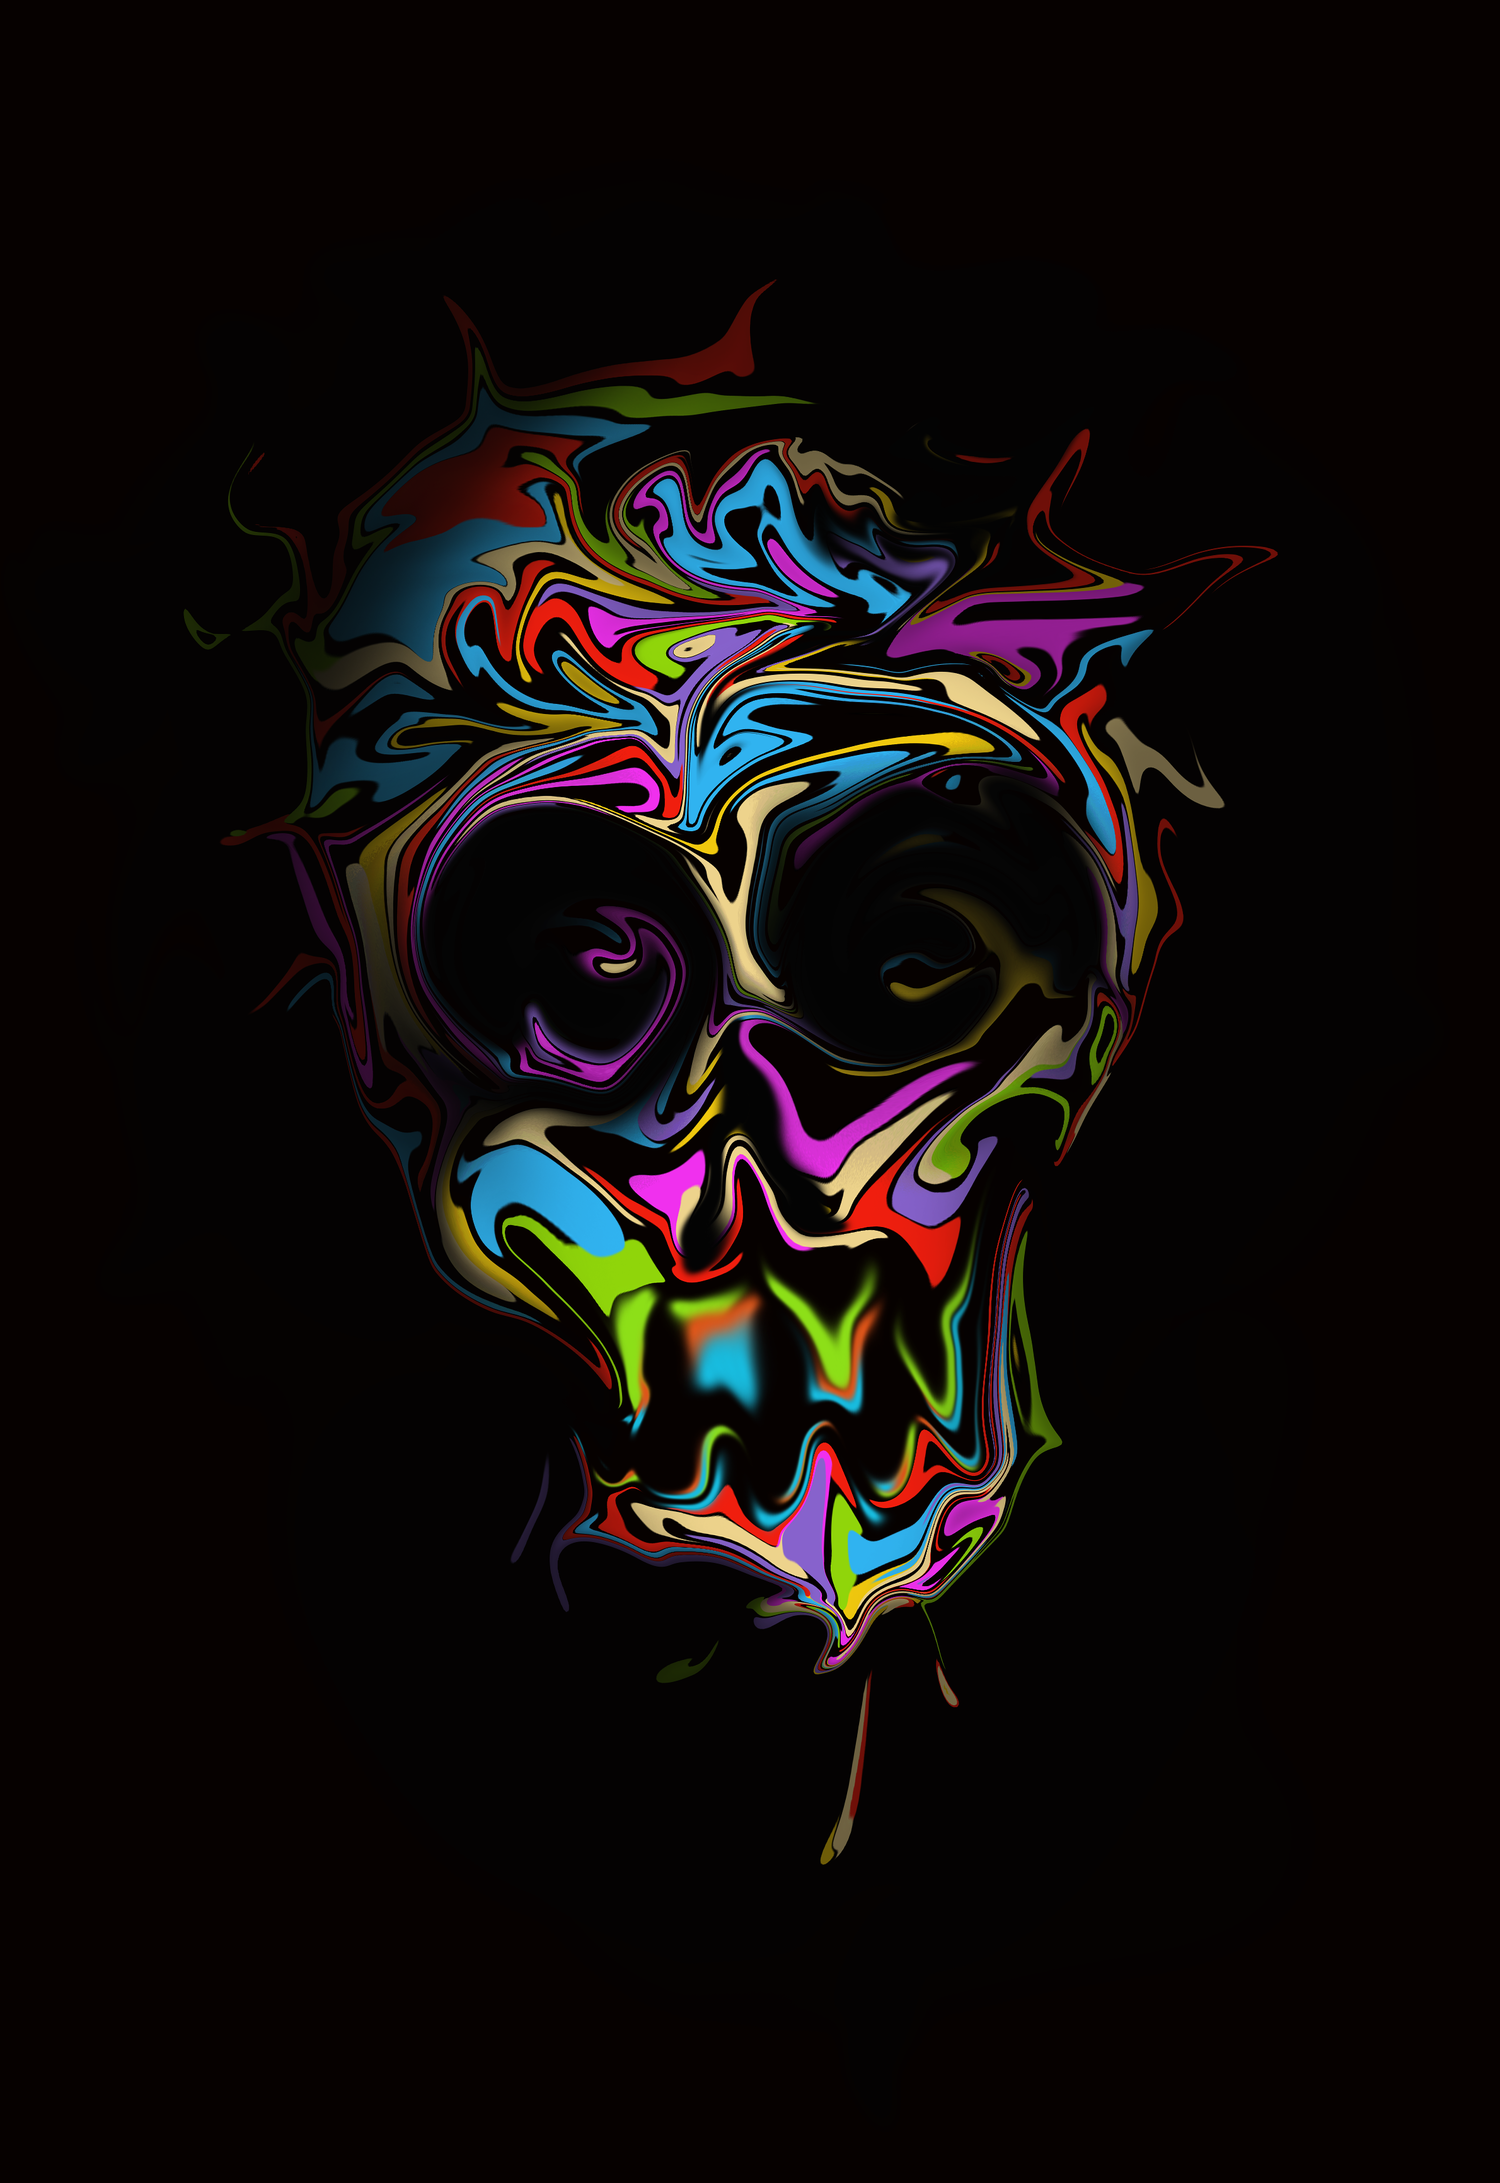 papel pintado colorido del cráneo,arte psicodélico,cráneo,oscuridad,arte,diseño gráfico